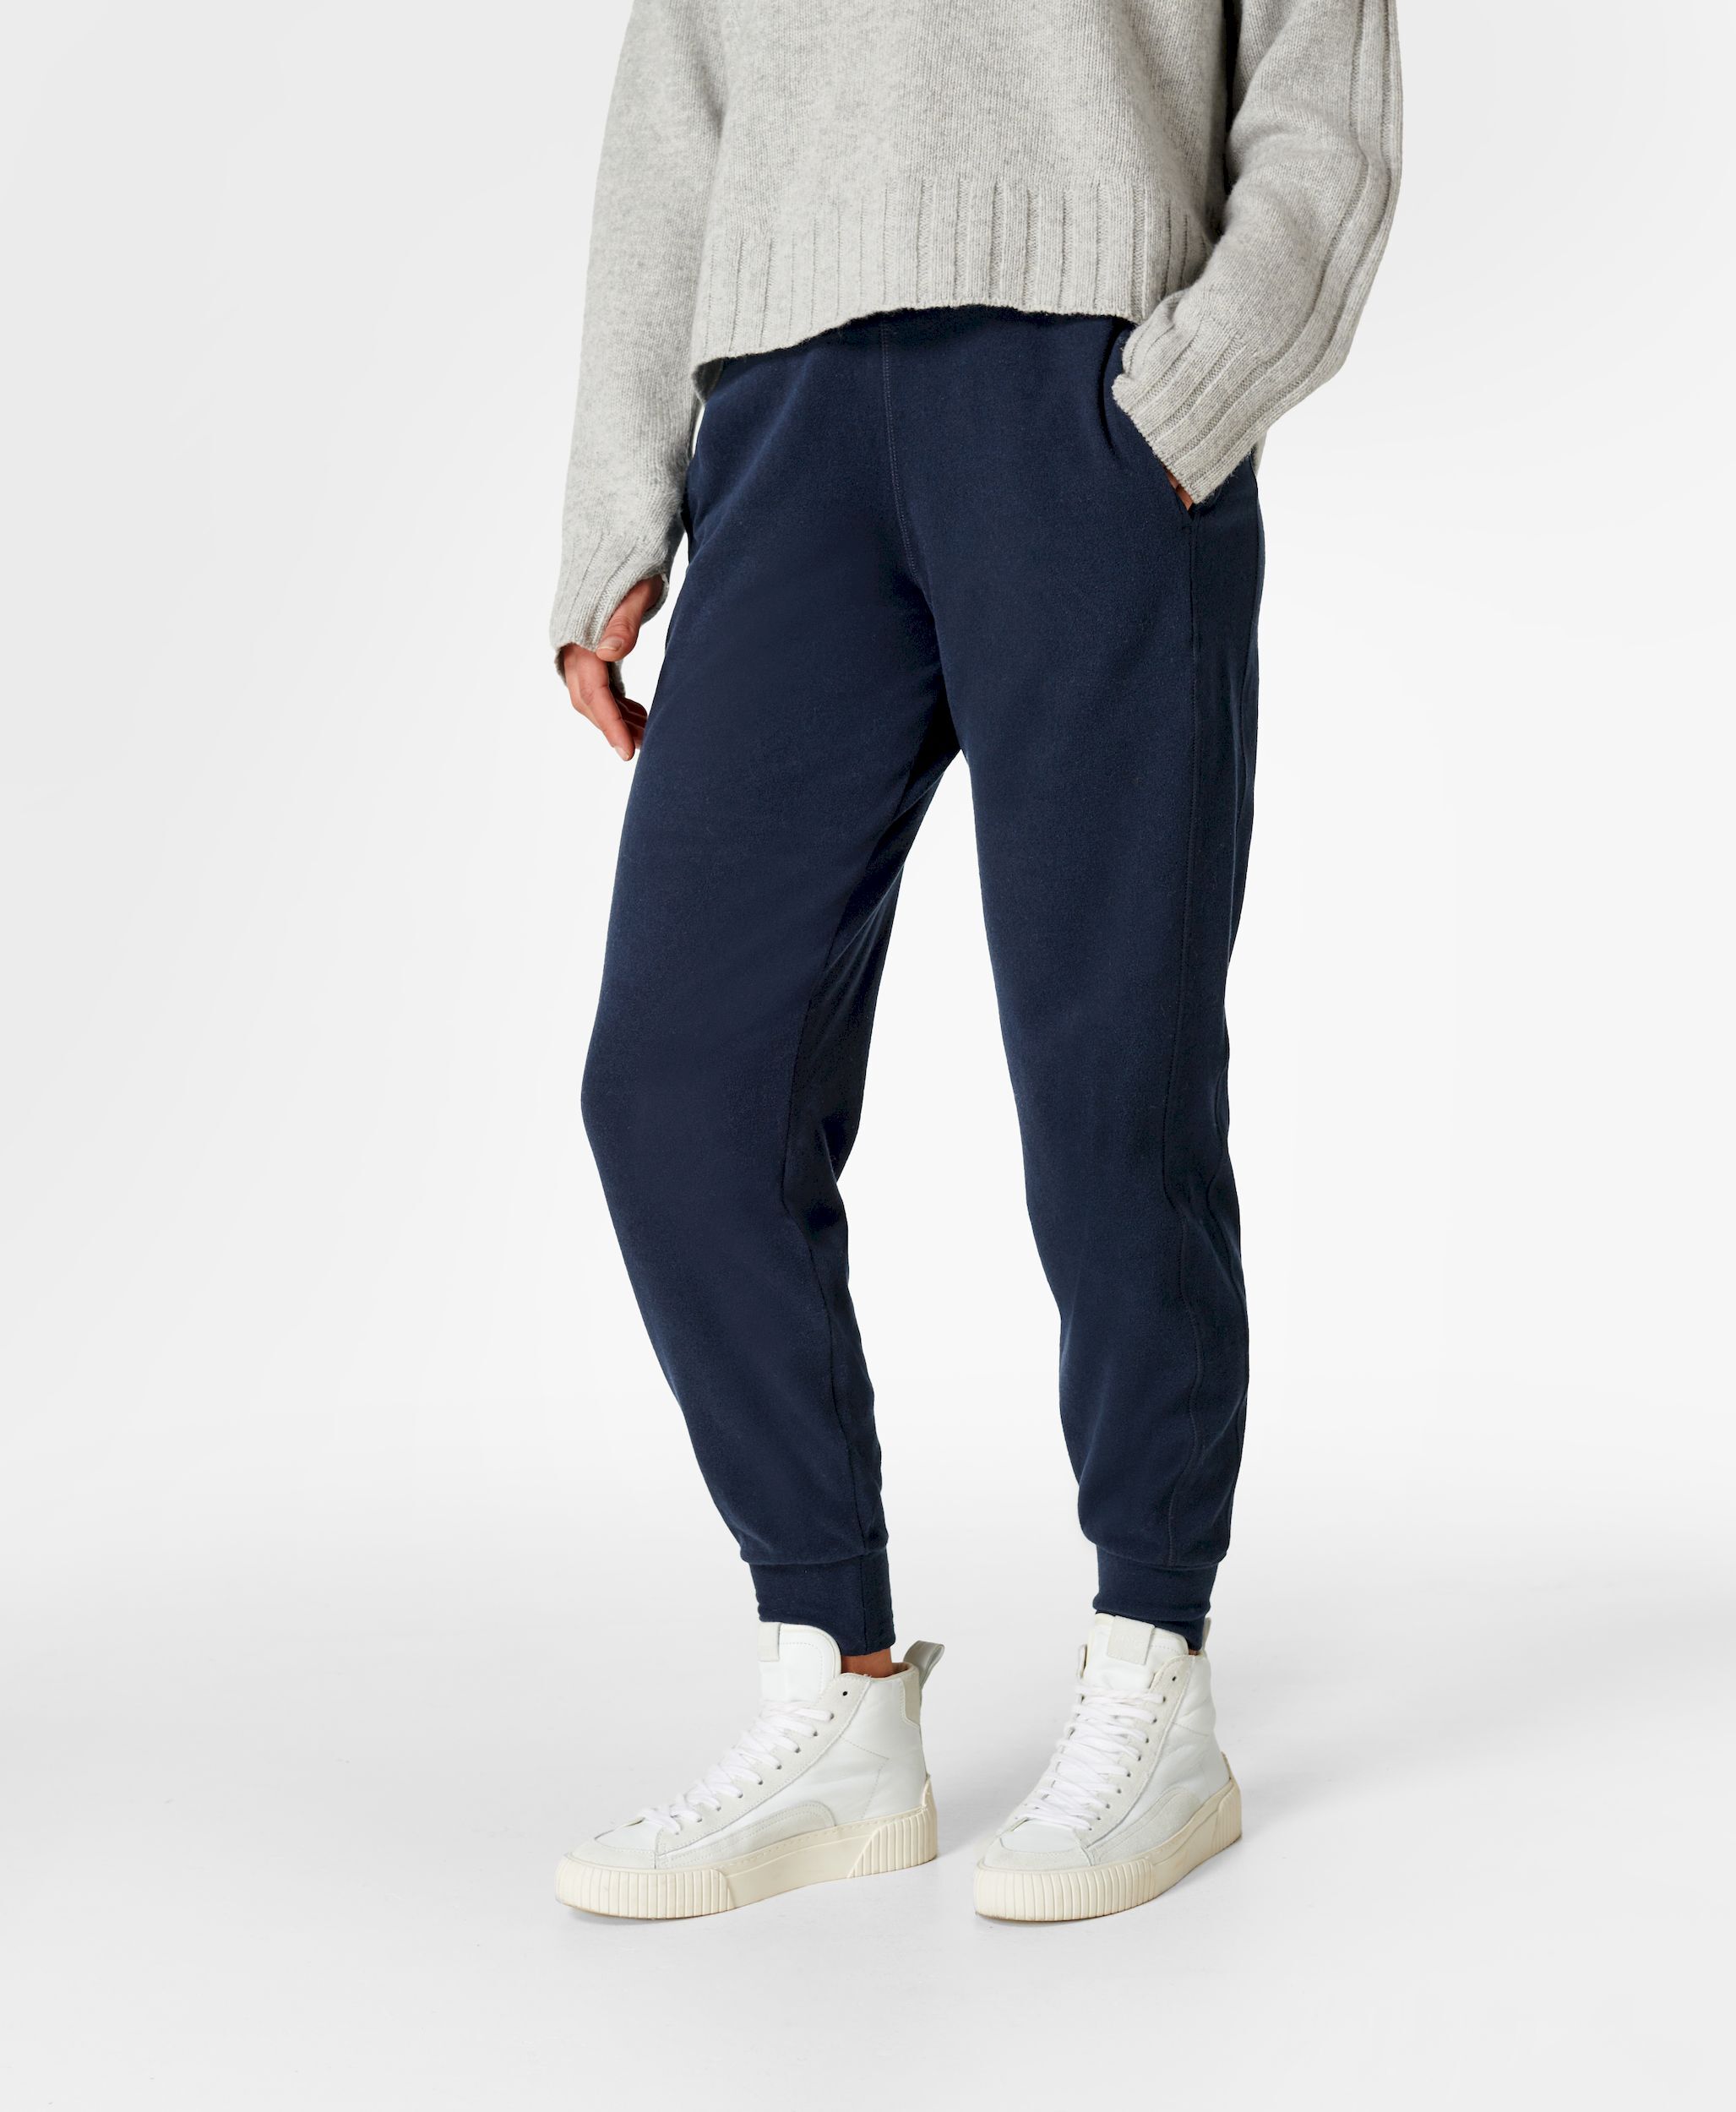 Sweaty Betty Gary Luxe 27" Fleece Trousers - Yoga trousers - Women's